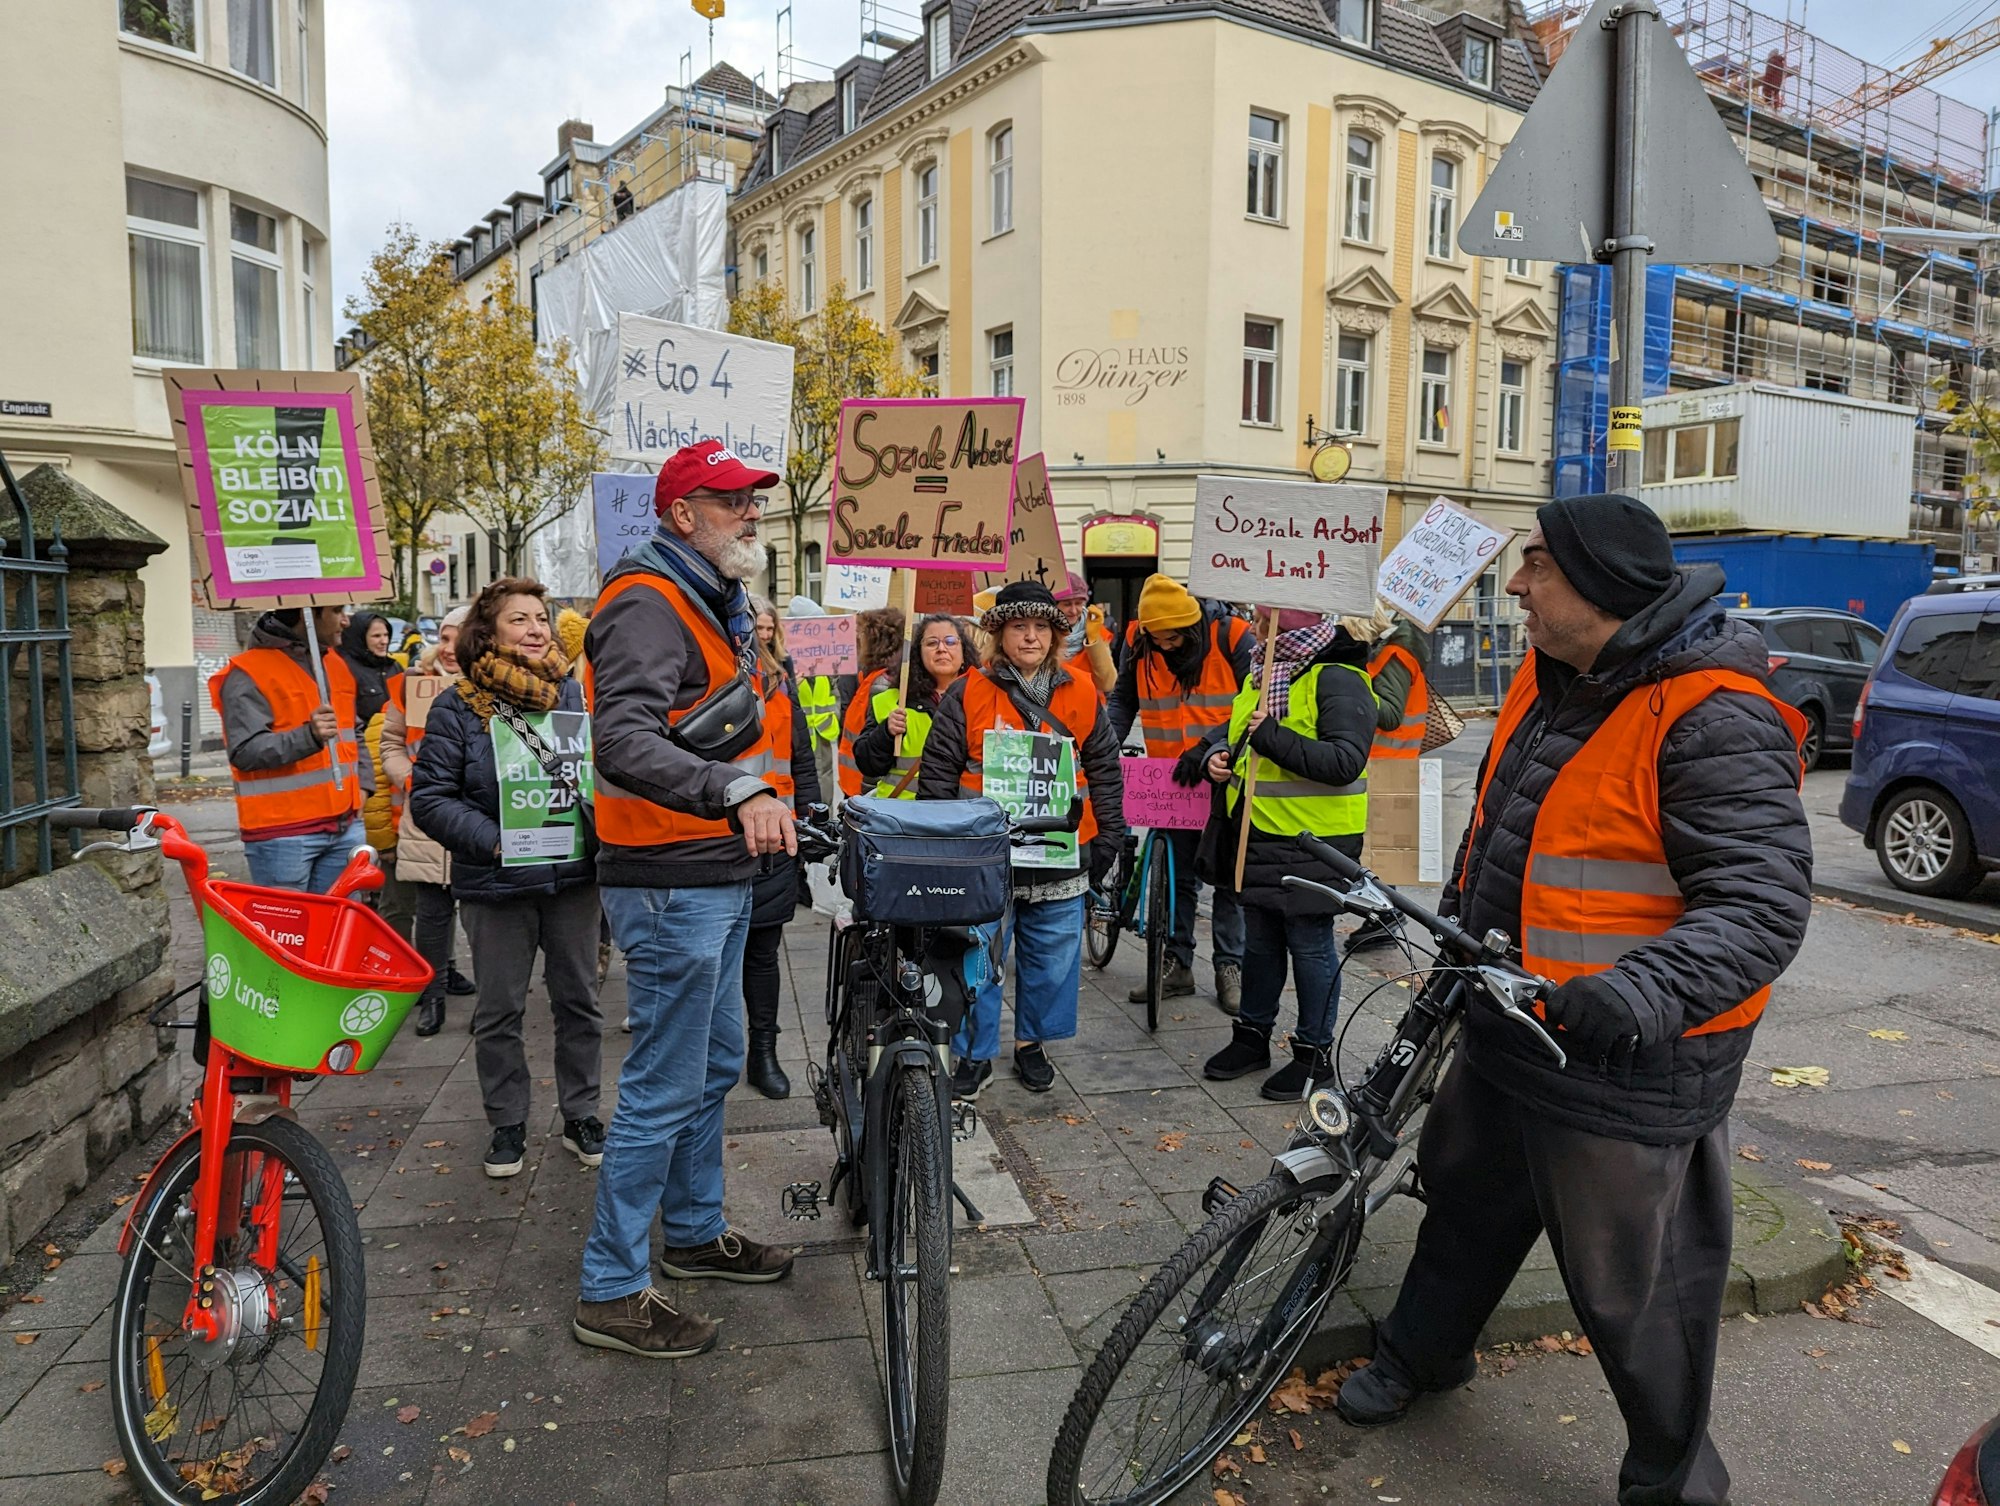 Protest auf Fahrrädern: Mitarbeitende der sozialen Träger protestieren dagegen, dass die Stadt Köln Tariferhöhungen nicht weiterreichen will.